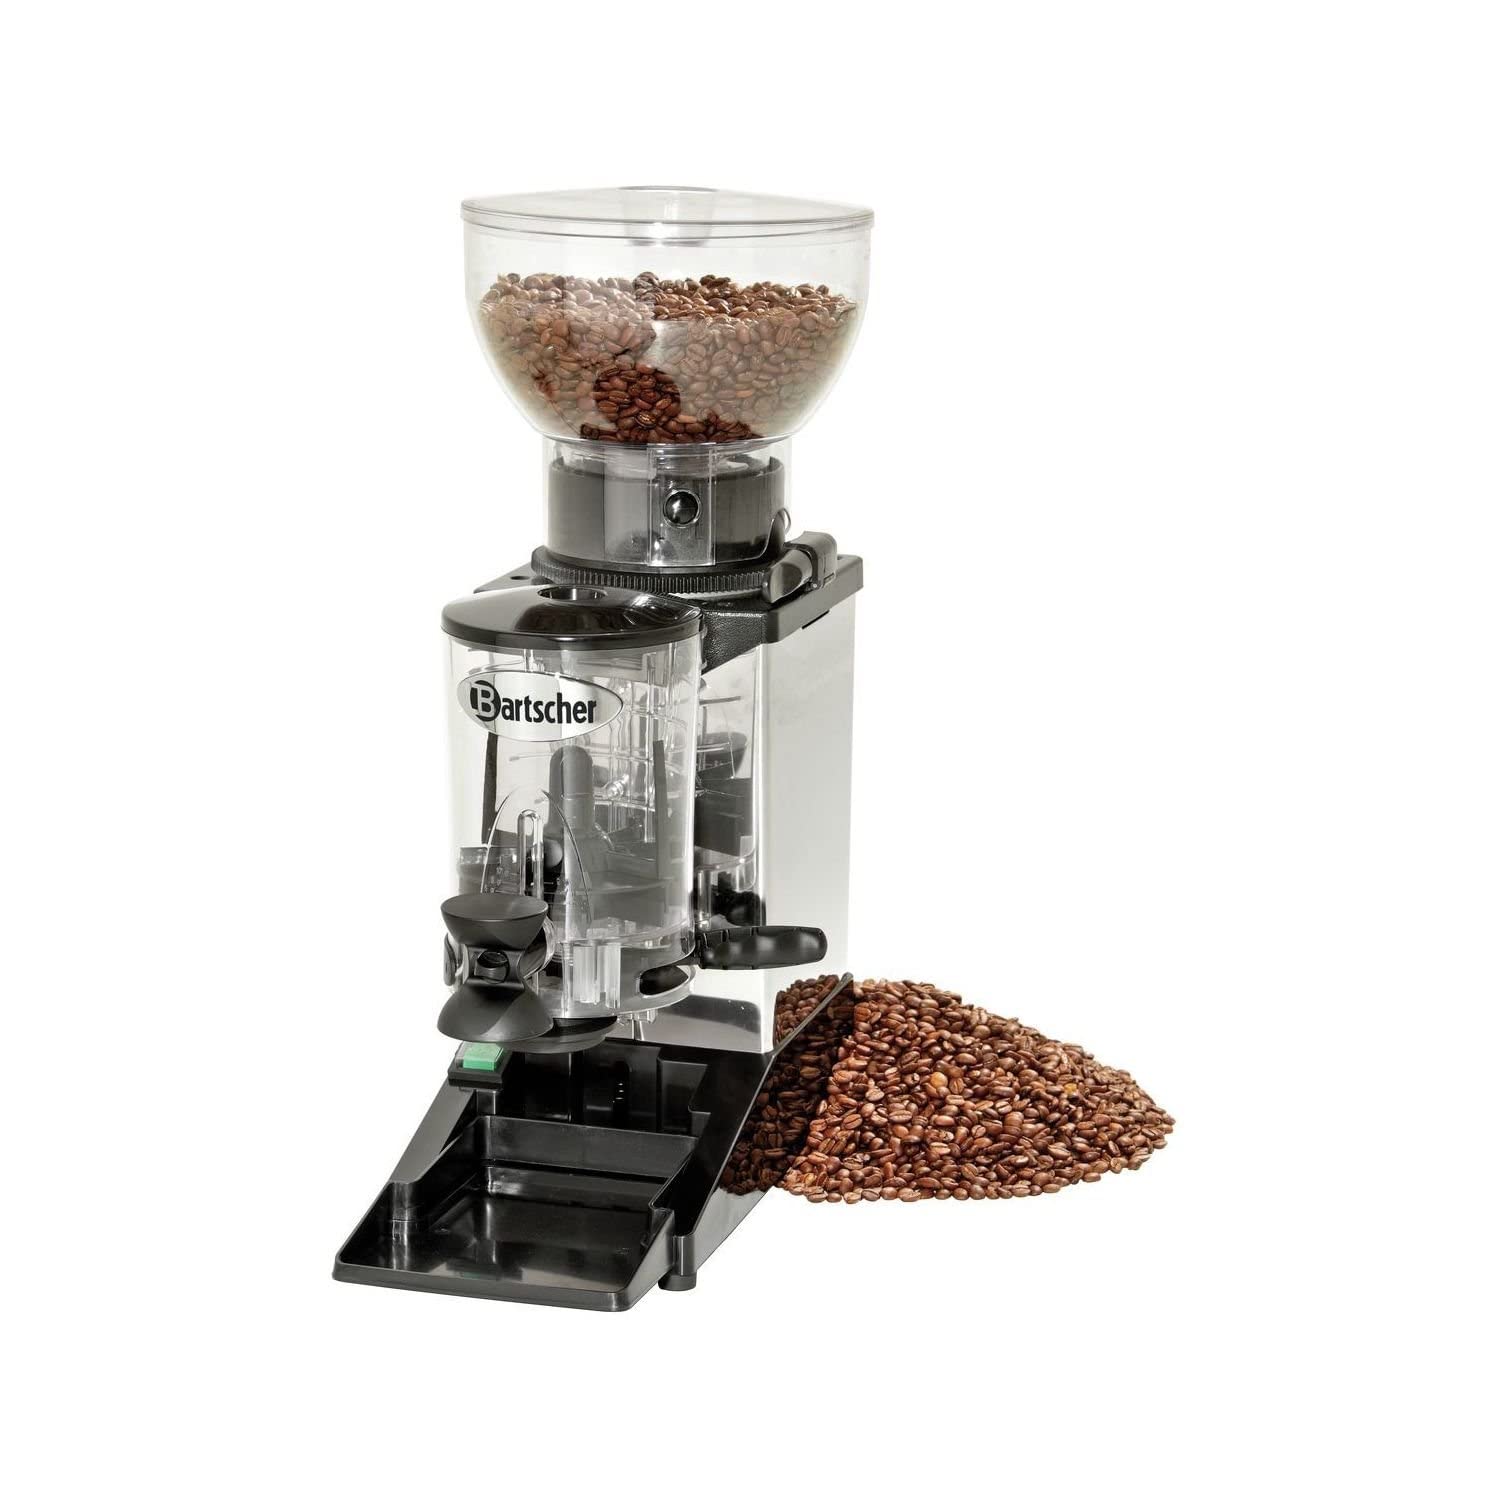 Coffee grinder model Tauro - Bartscher 190175